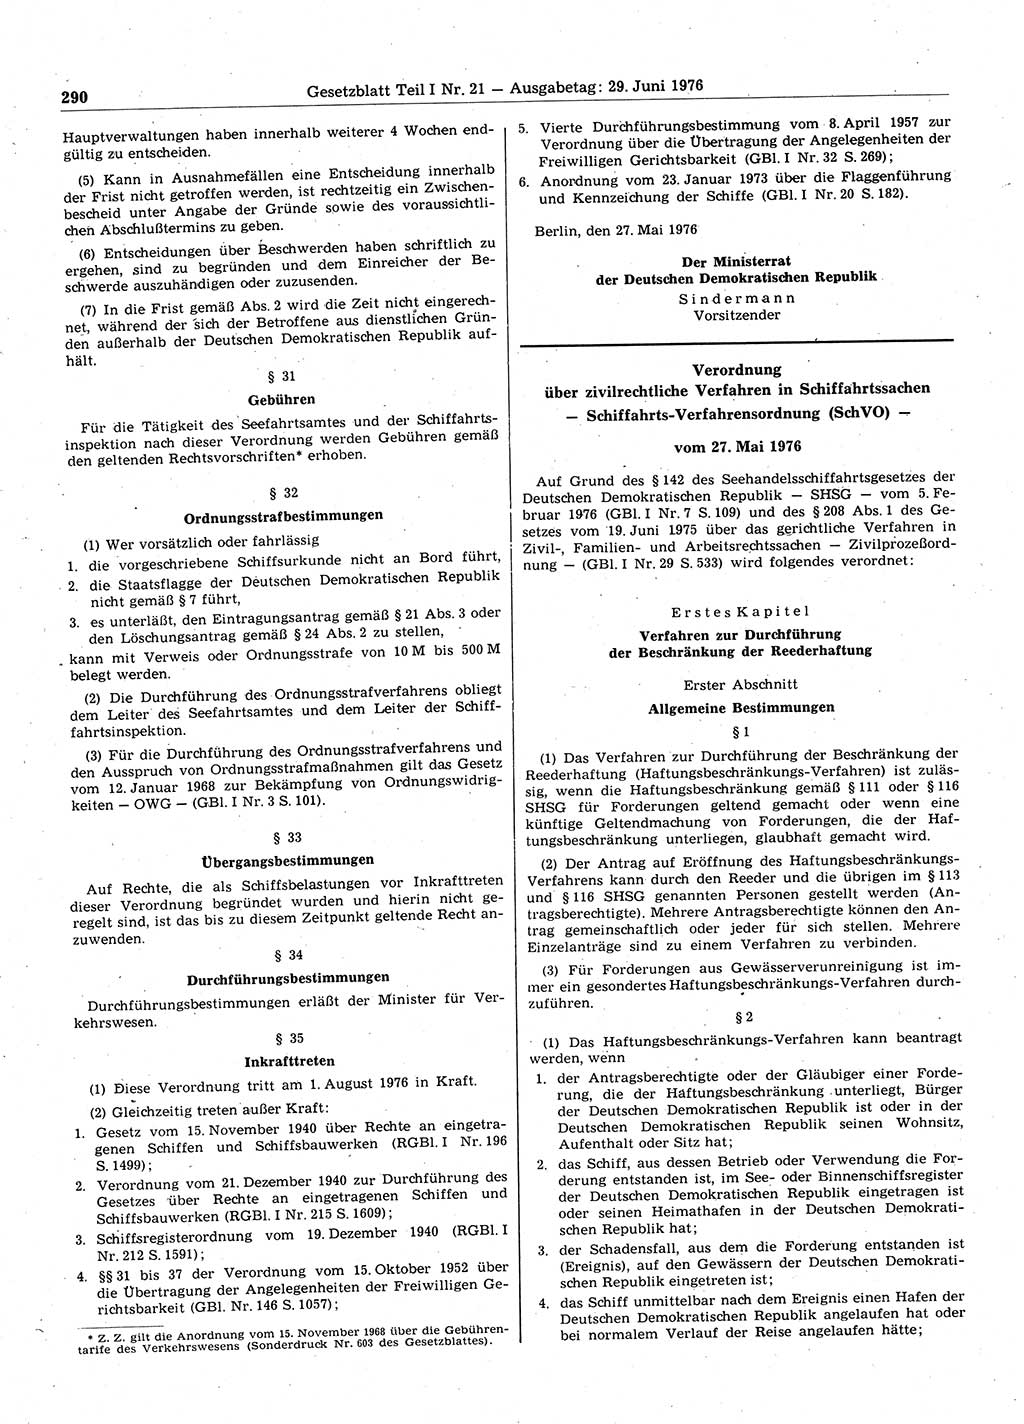 Gesetzblatt (GBl.) der Deutschen Demokratischen Republik (DDR) Teil Ⅰ 1976, Seite 290 (GBl. DDR Ⅰ 1976, S. 290)